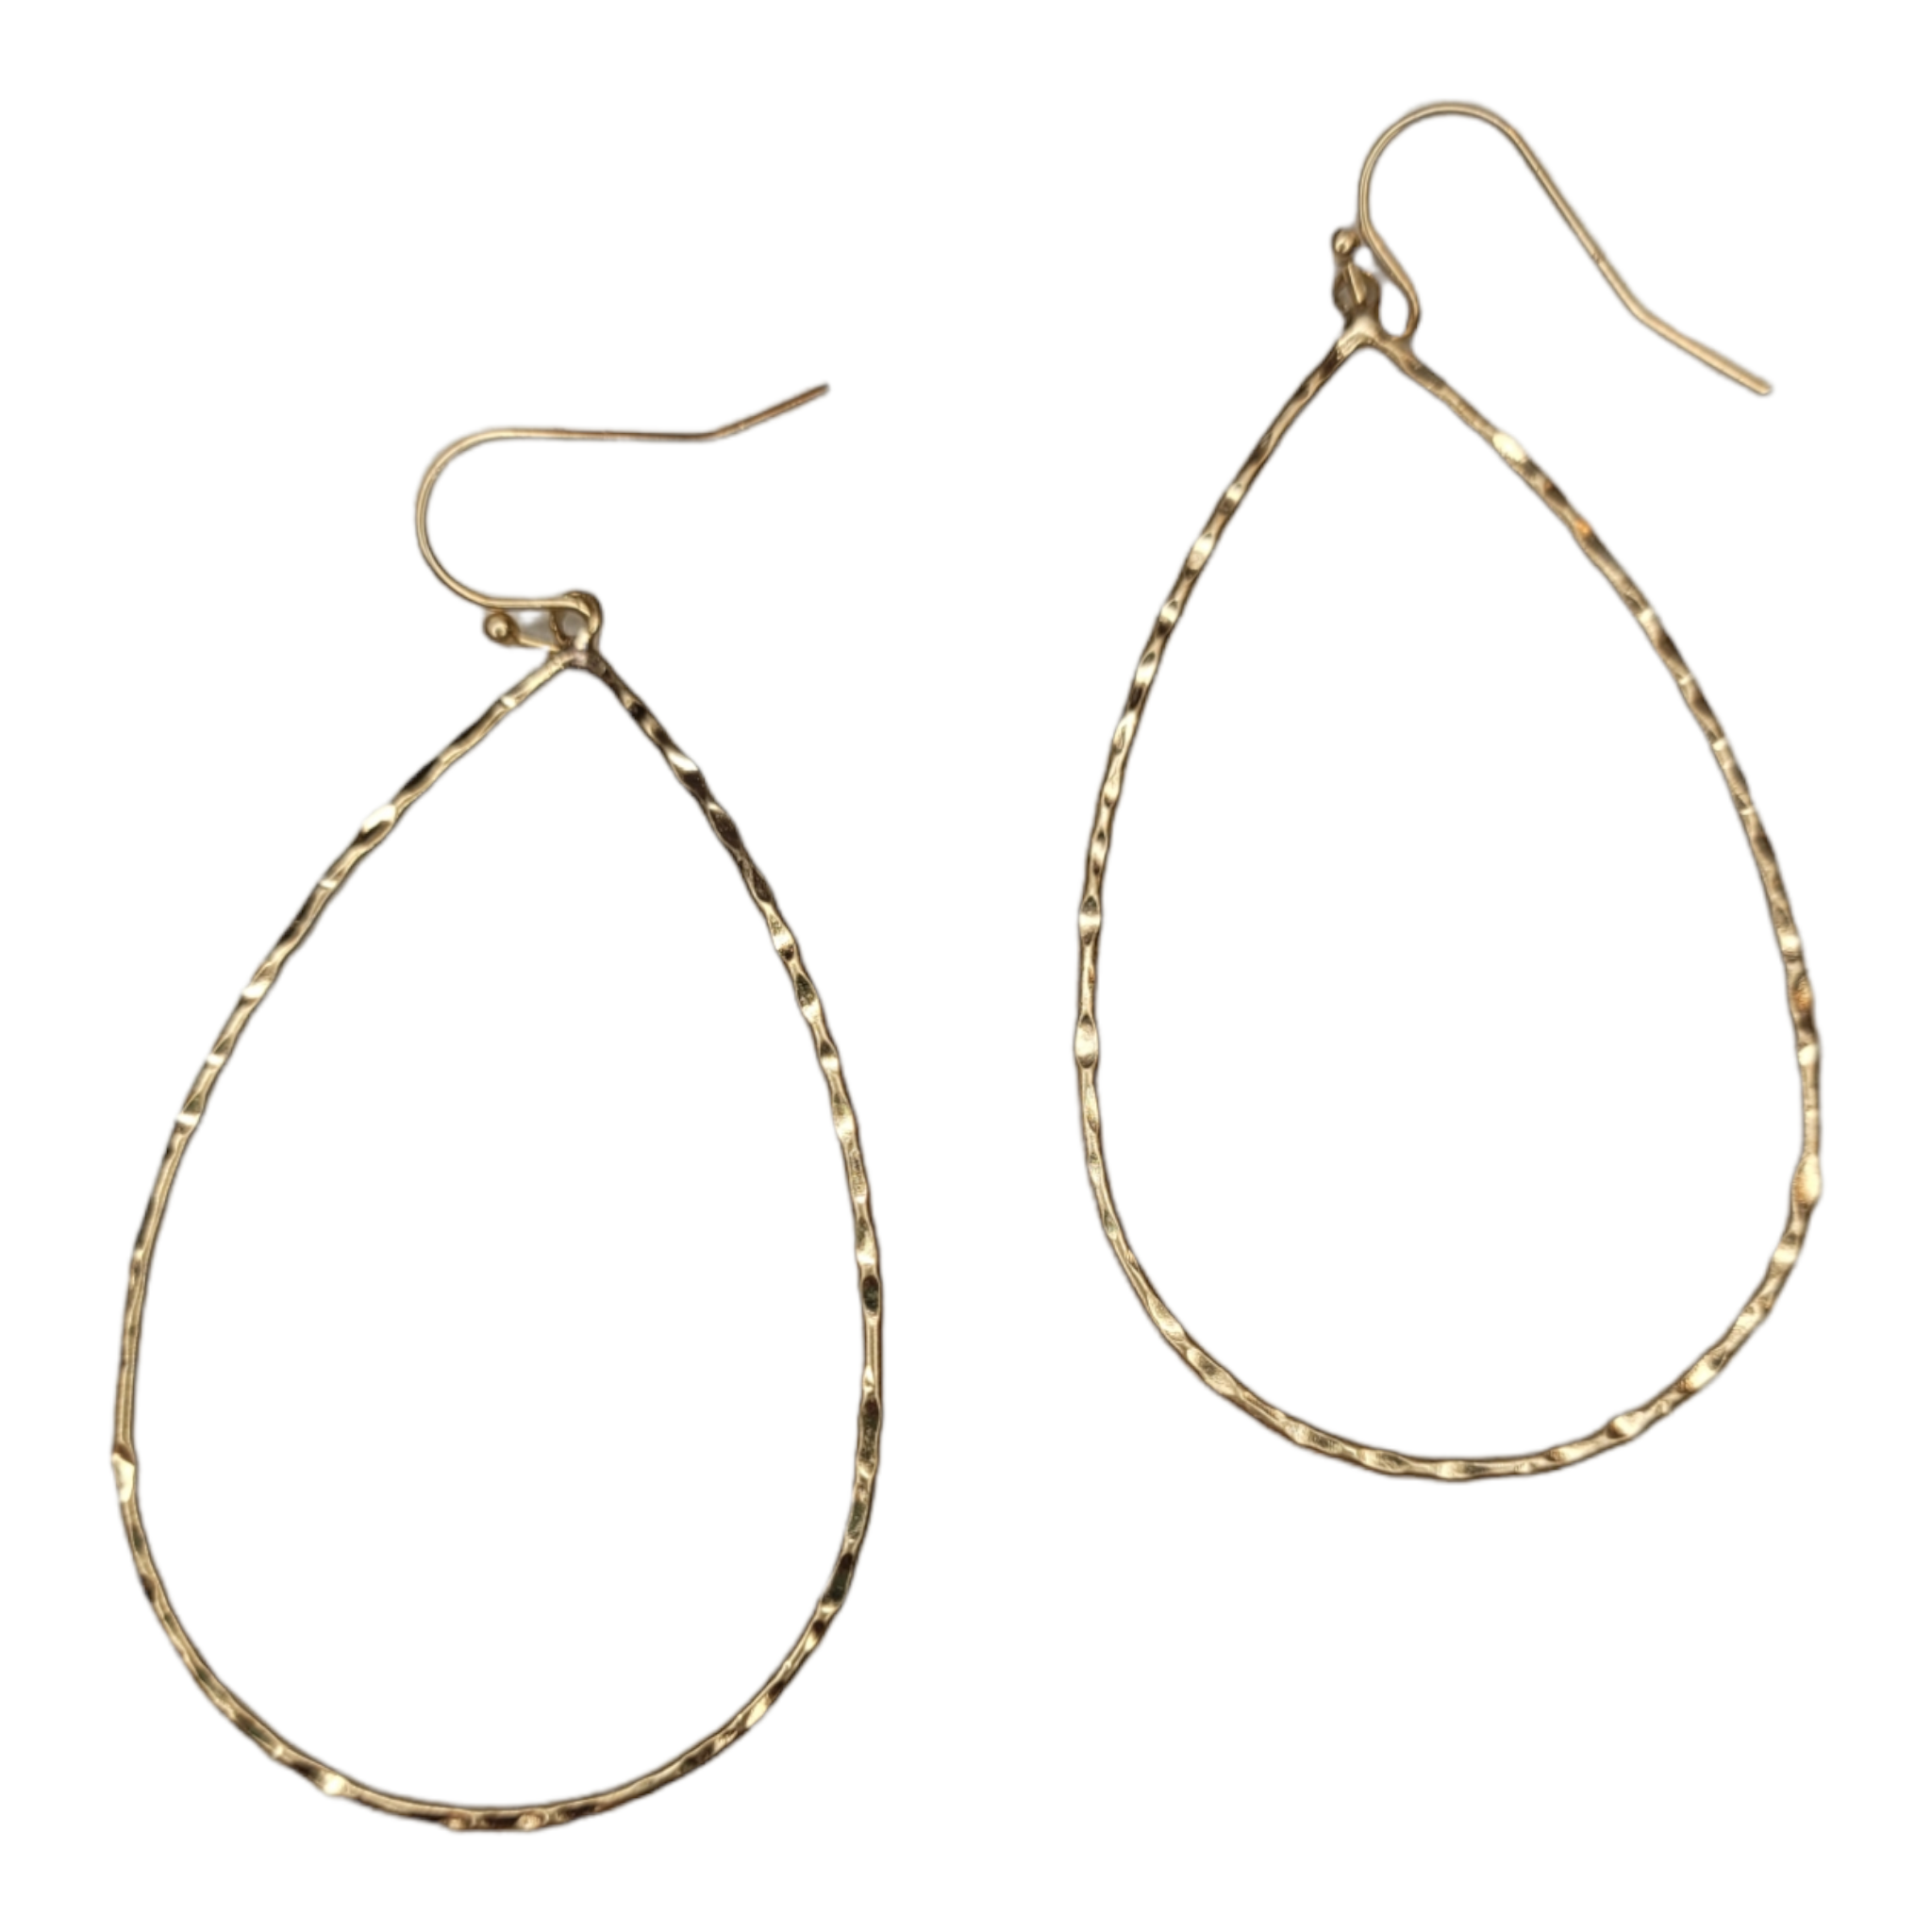 Gold Teardrop Earrings-Earrings-louisgeorgeboutique-LouisGeorge Boutique, Women’s Fashion Boutique Located in Trussville, Alabama